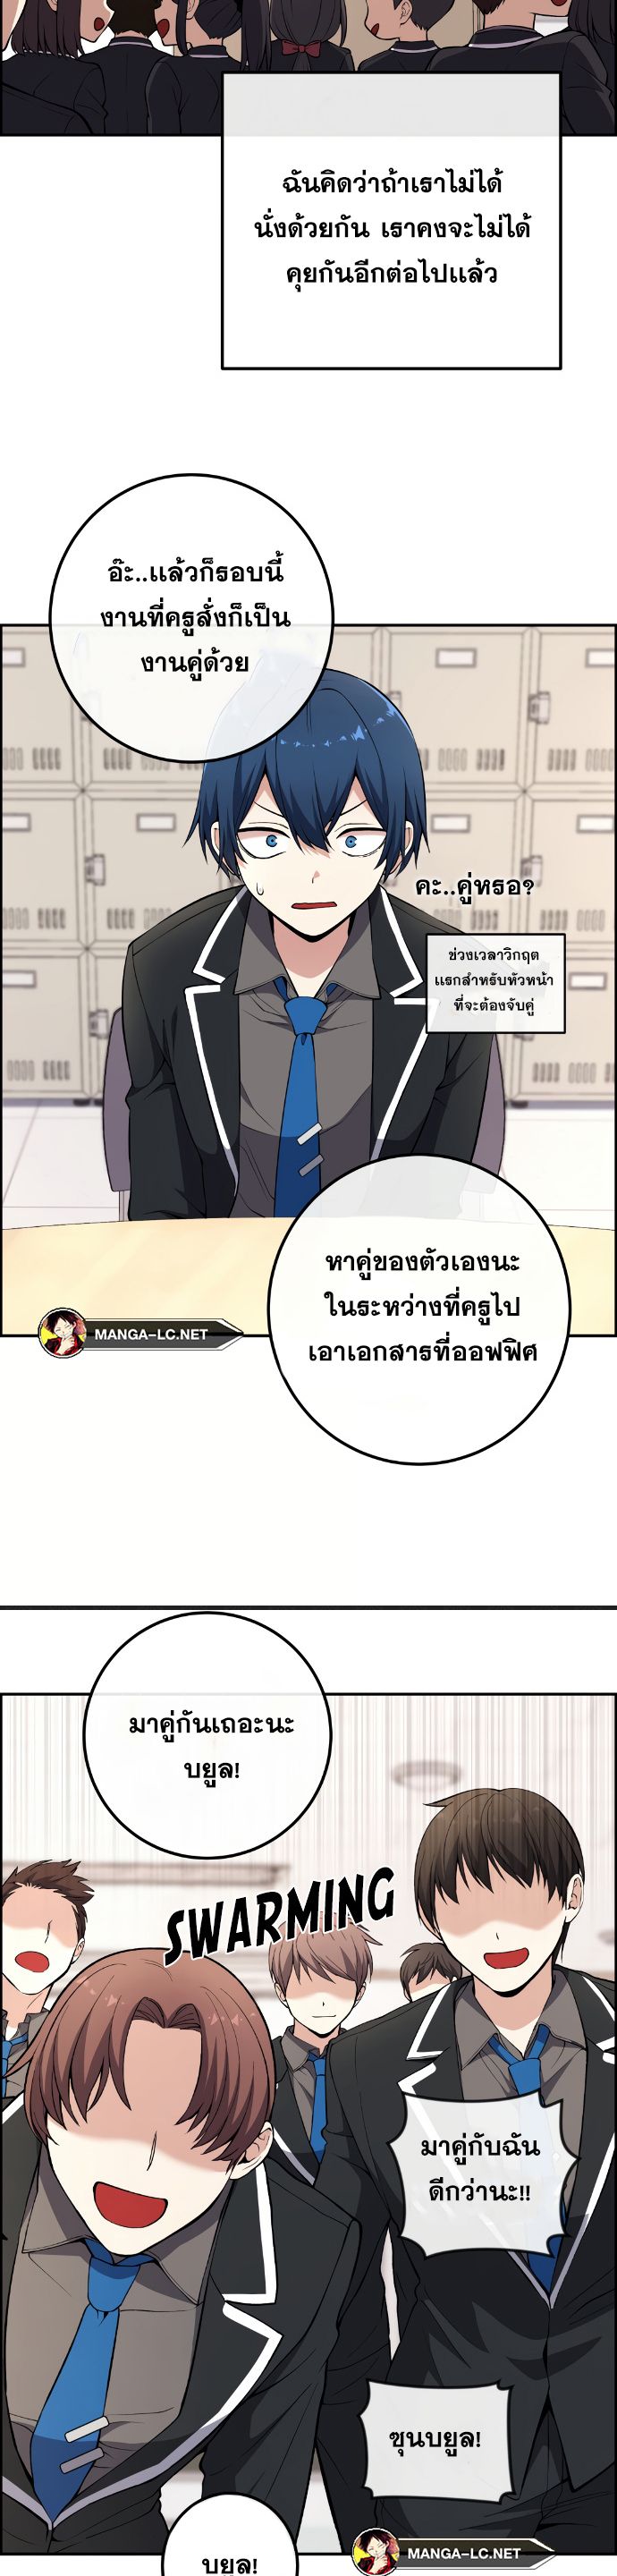 Webtoon Character Na Kang Lim ตอนที่ 143 (36)